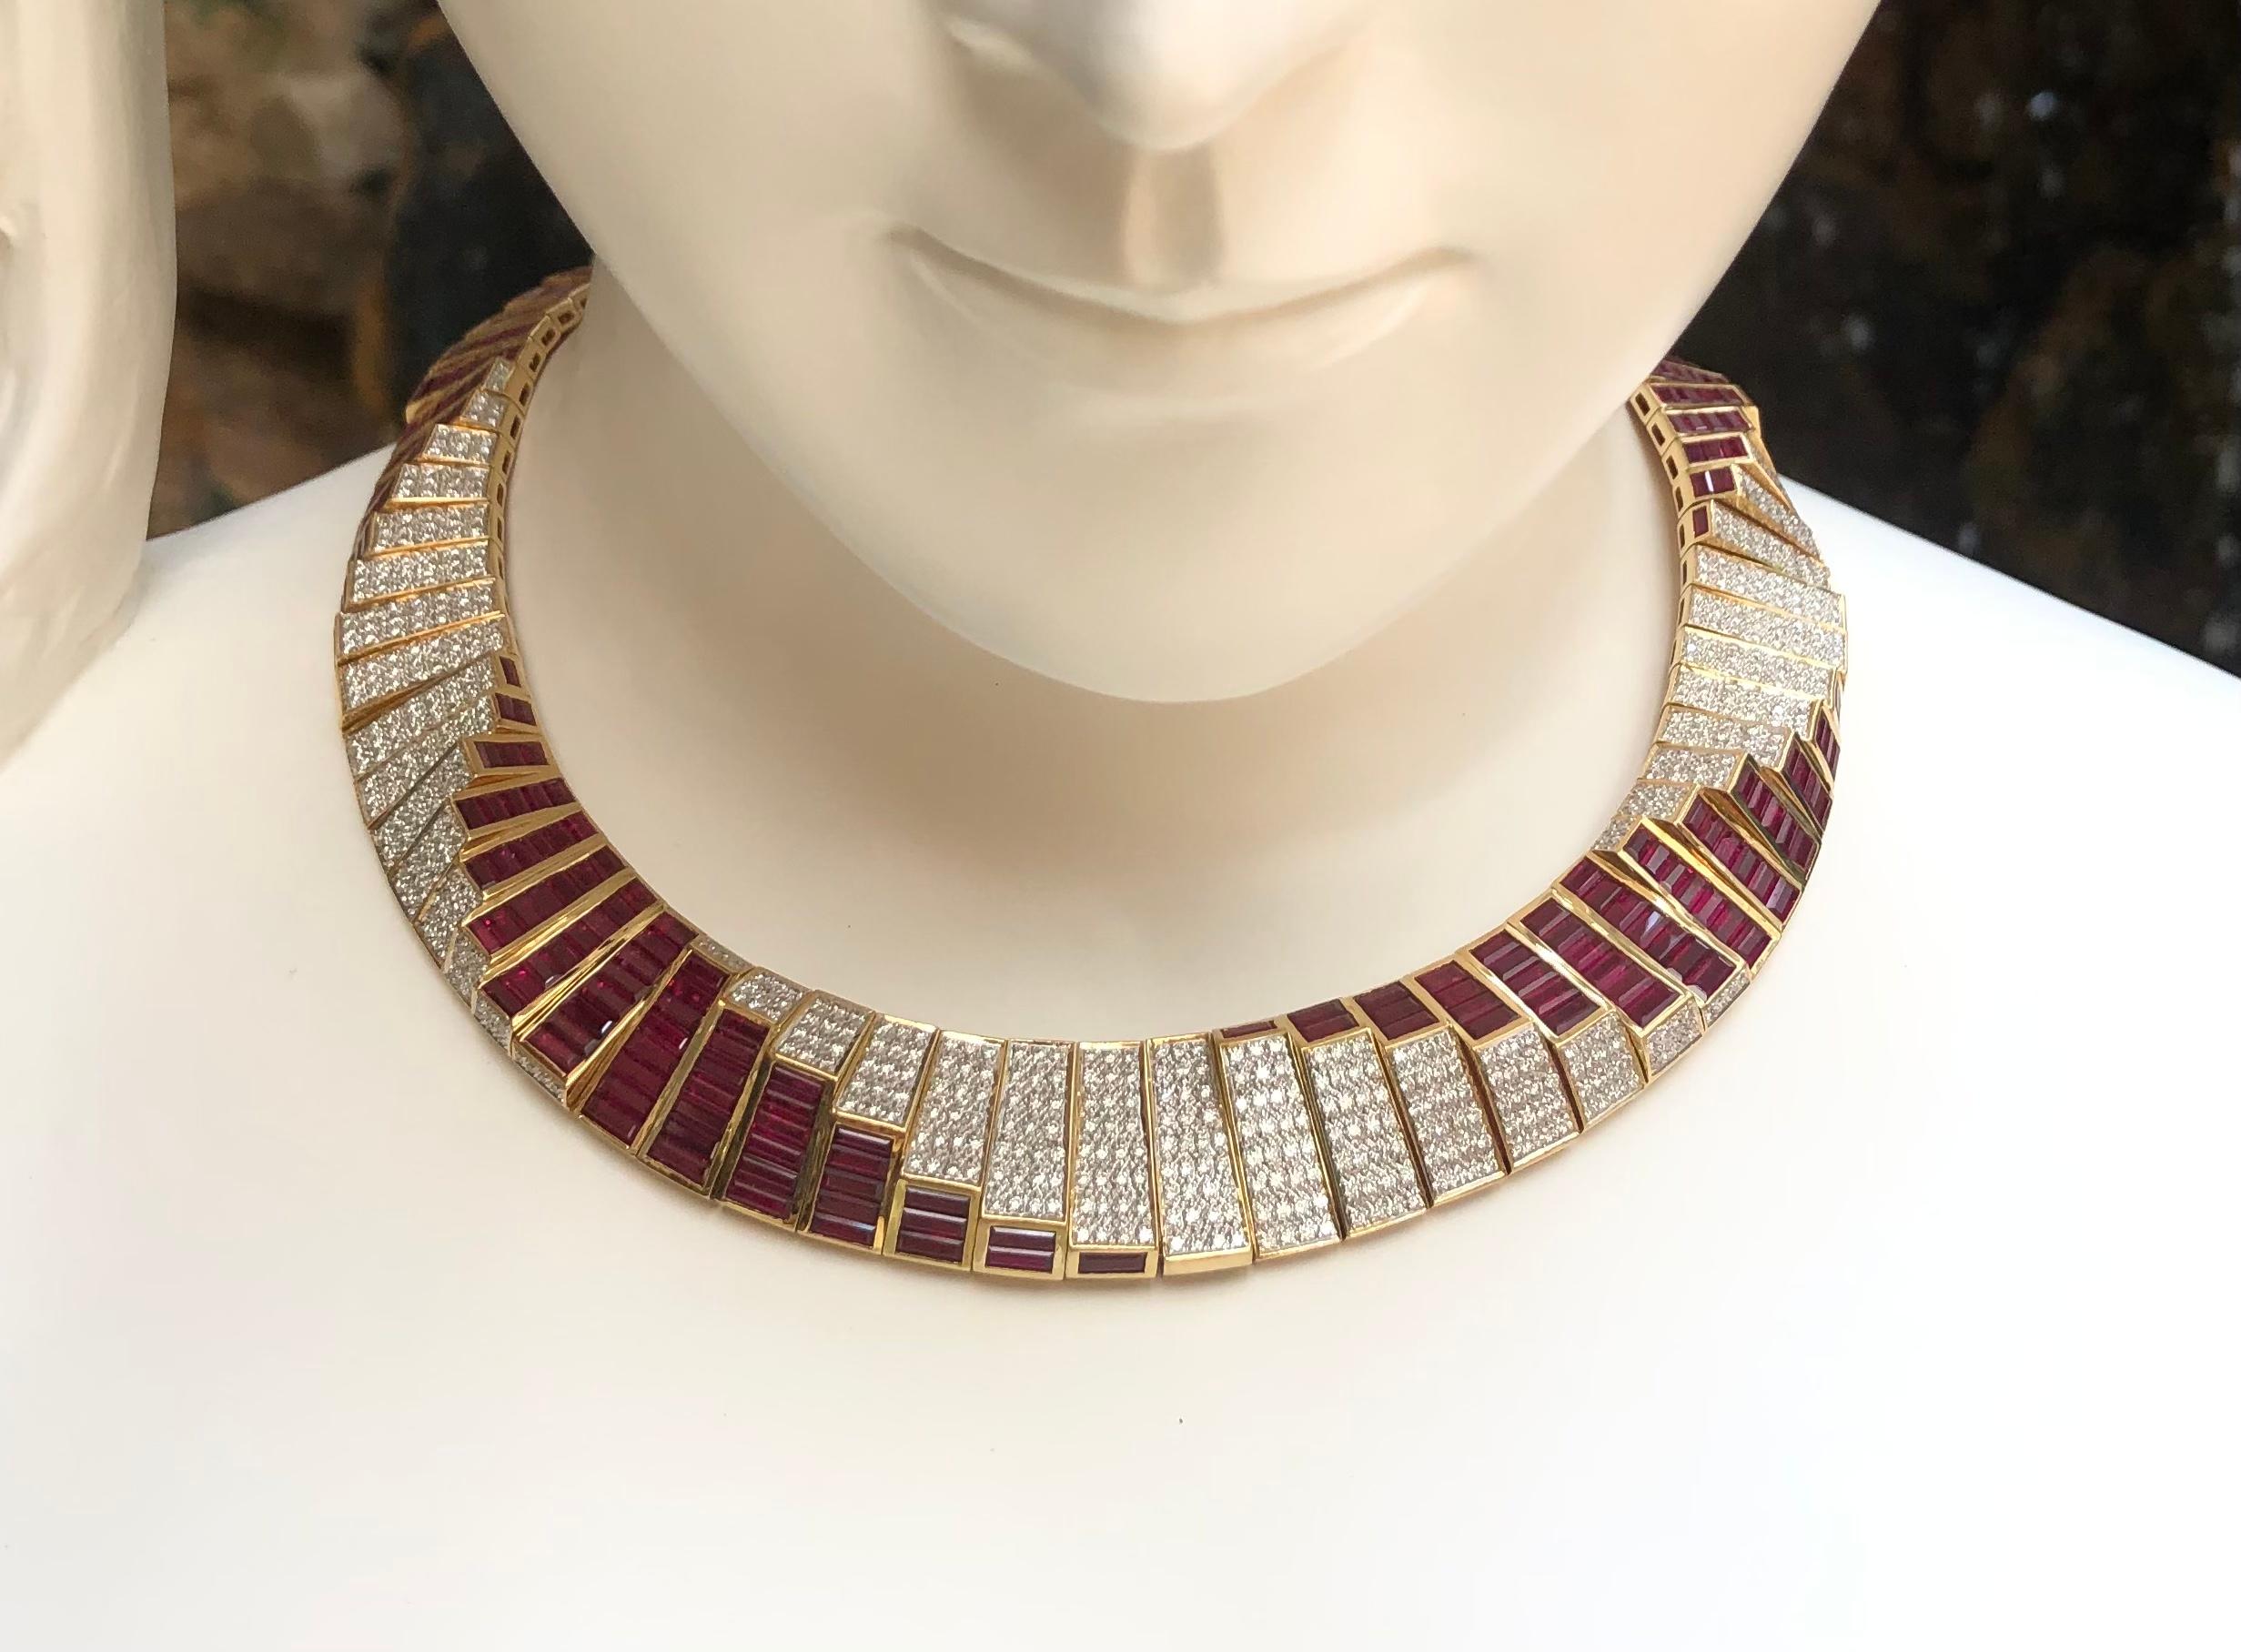 Rubin 42,20 Karat mit Diamant 10,0 Karat Halskette in 18 Karat Goldfassung

Breite:  1.7 cm 
Länge: 43,4 cm
Gesamtgewicht: 137,31 Gramm

